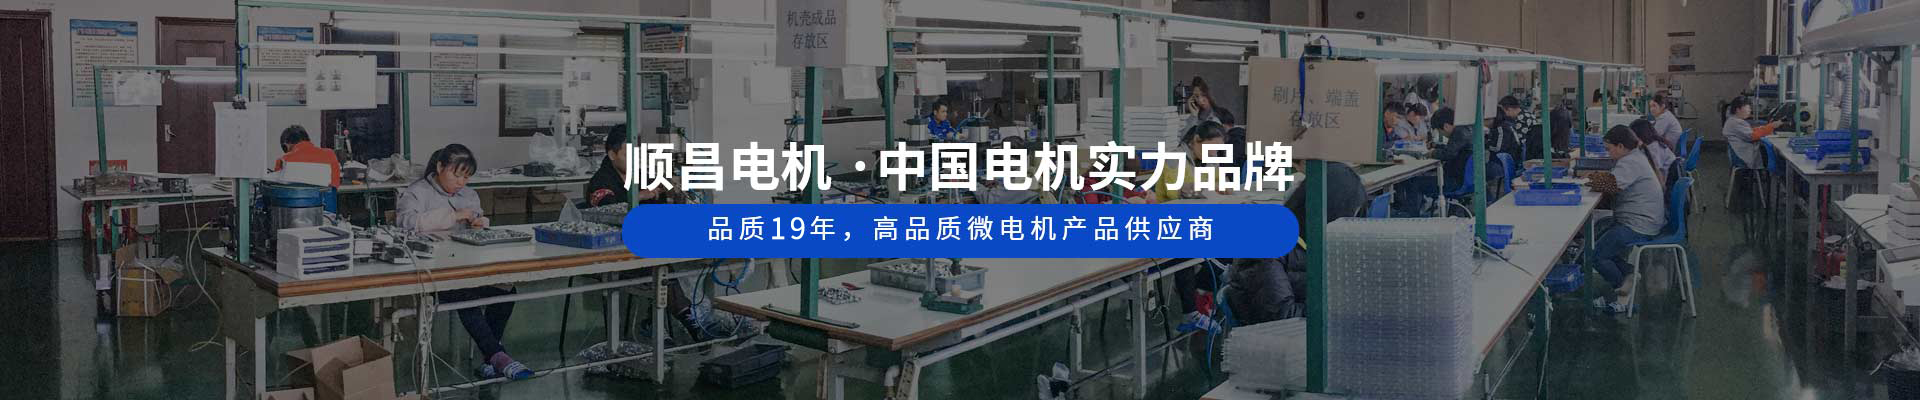 顺昌电机 ·中国电机实力品牌 品质19年，高品质微电机产品供应商